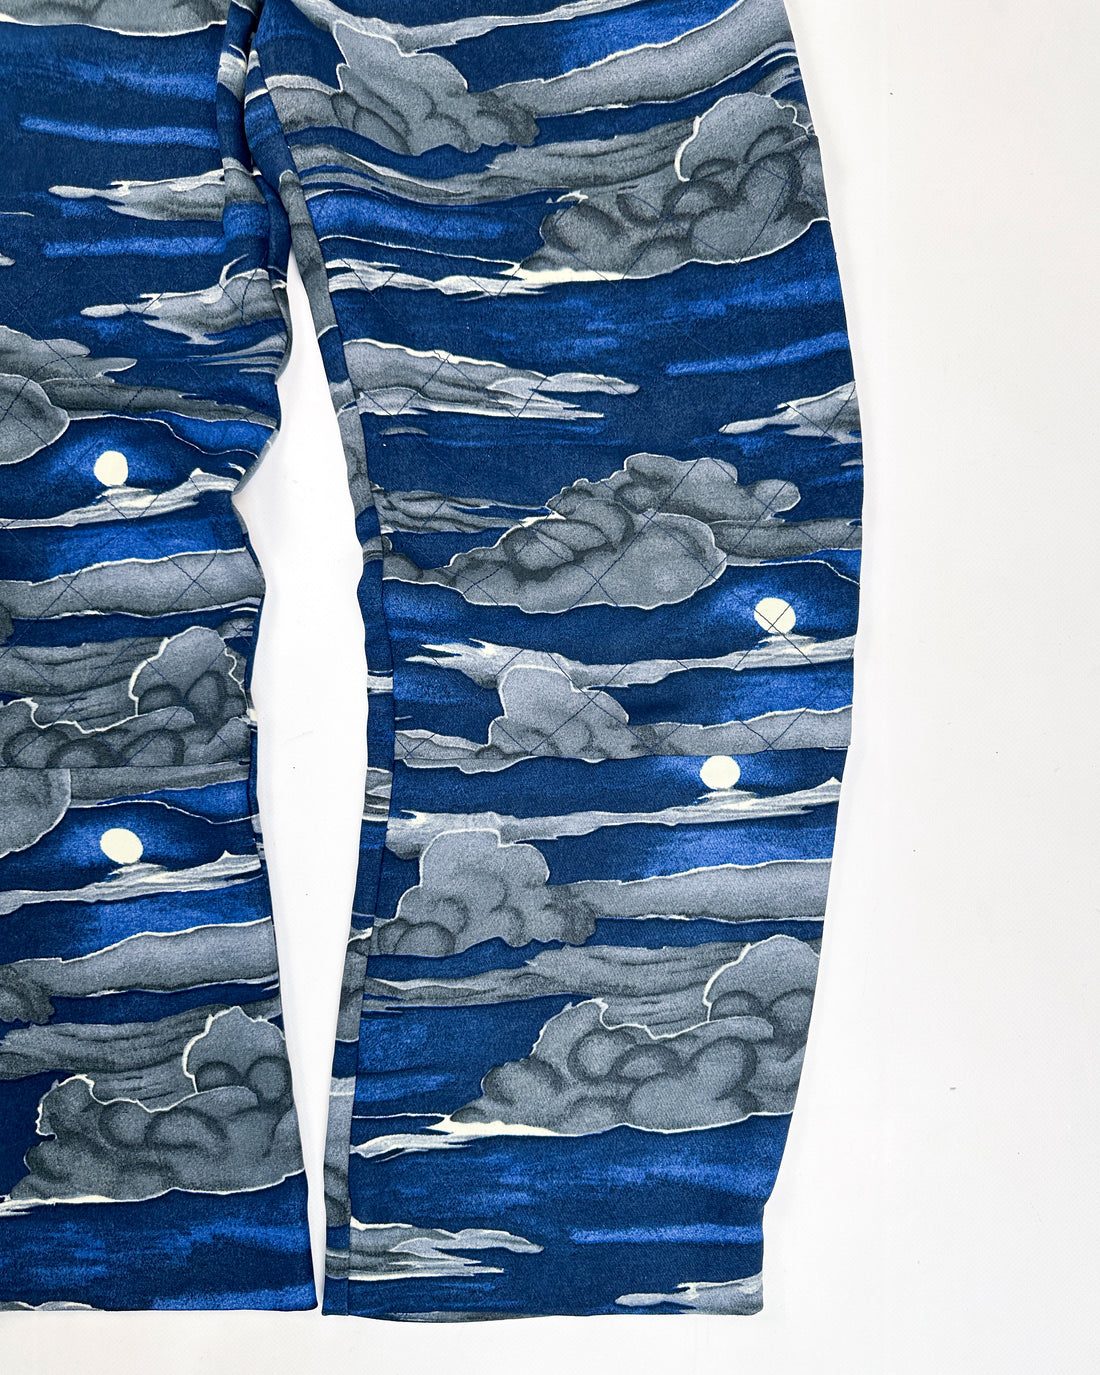 Kenzo Blue Printed Fluid Pants 2000's